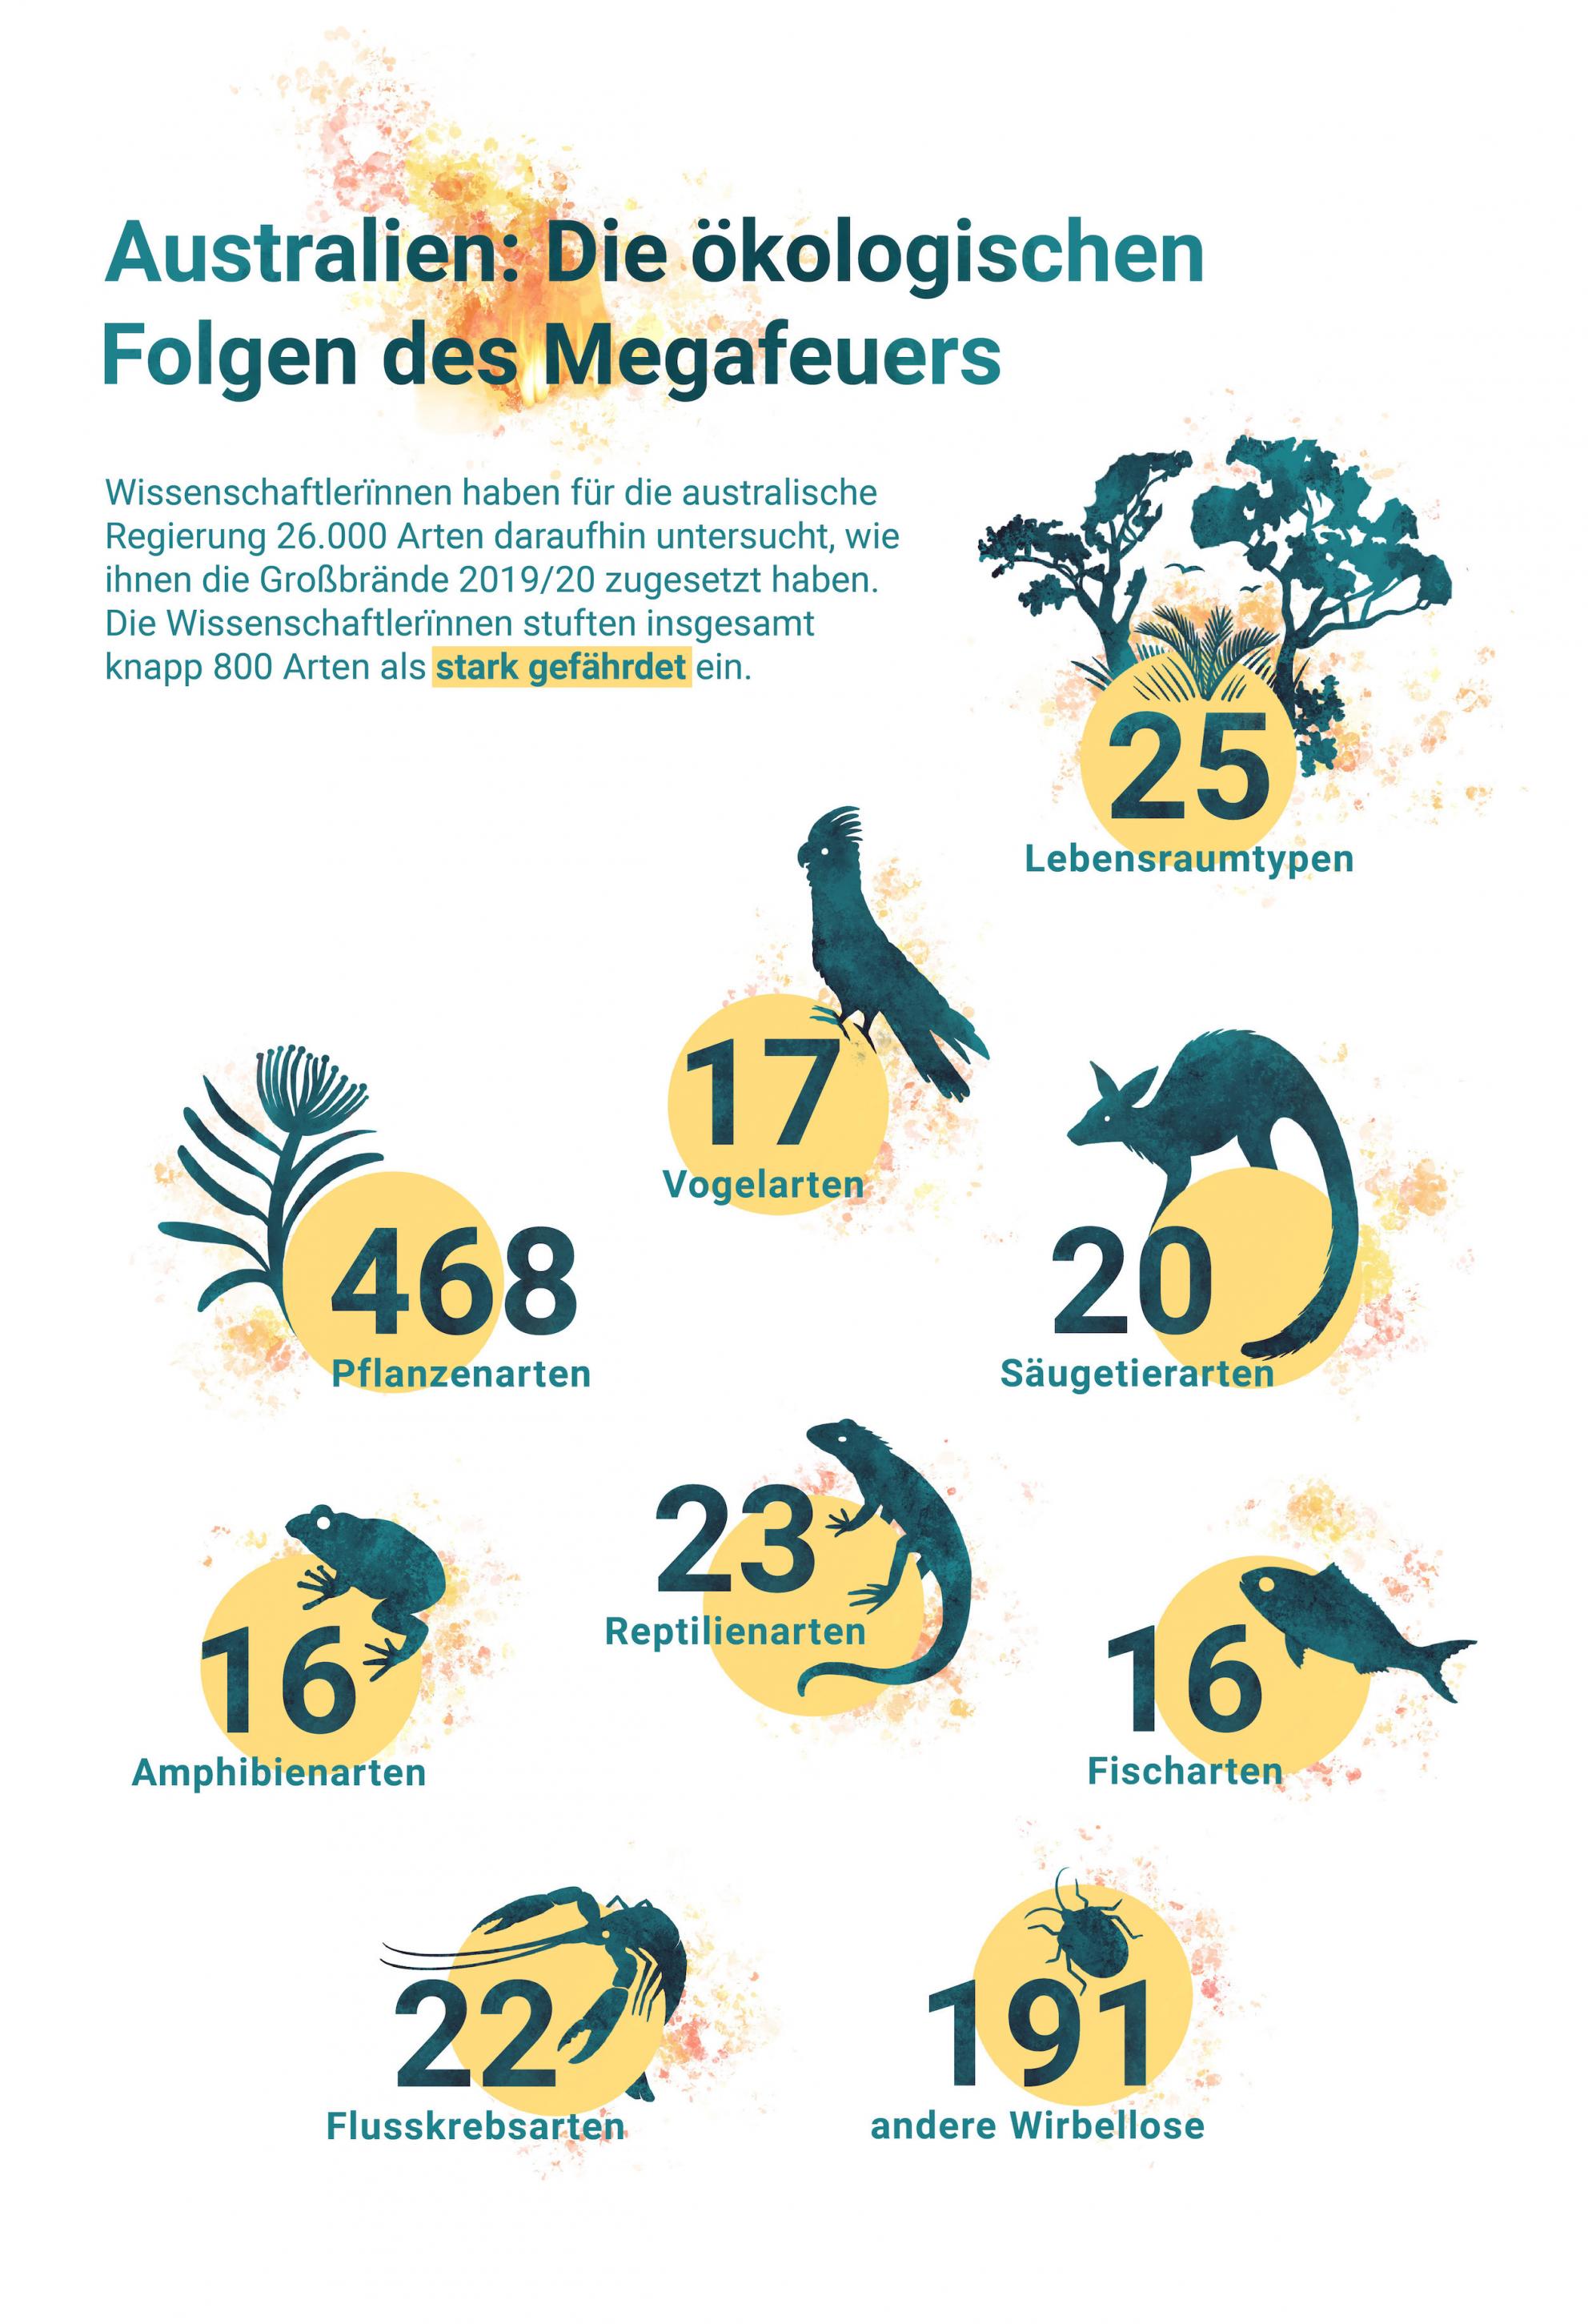 Die Graphik gibt die Zahl der Tier- und Pflanzenarten sowie der Lebensraum-Typen an, die durch das Megafeuer in Existenznot gekommen sind. Das sind zum Beispiel 17 Vogelarten, 25 Lebensraumtypen, 486 Pflanzenarten und je 16 Fisch- und Amphibienarten.